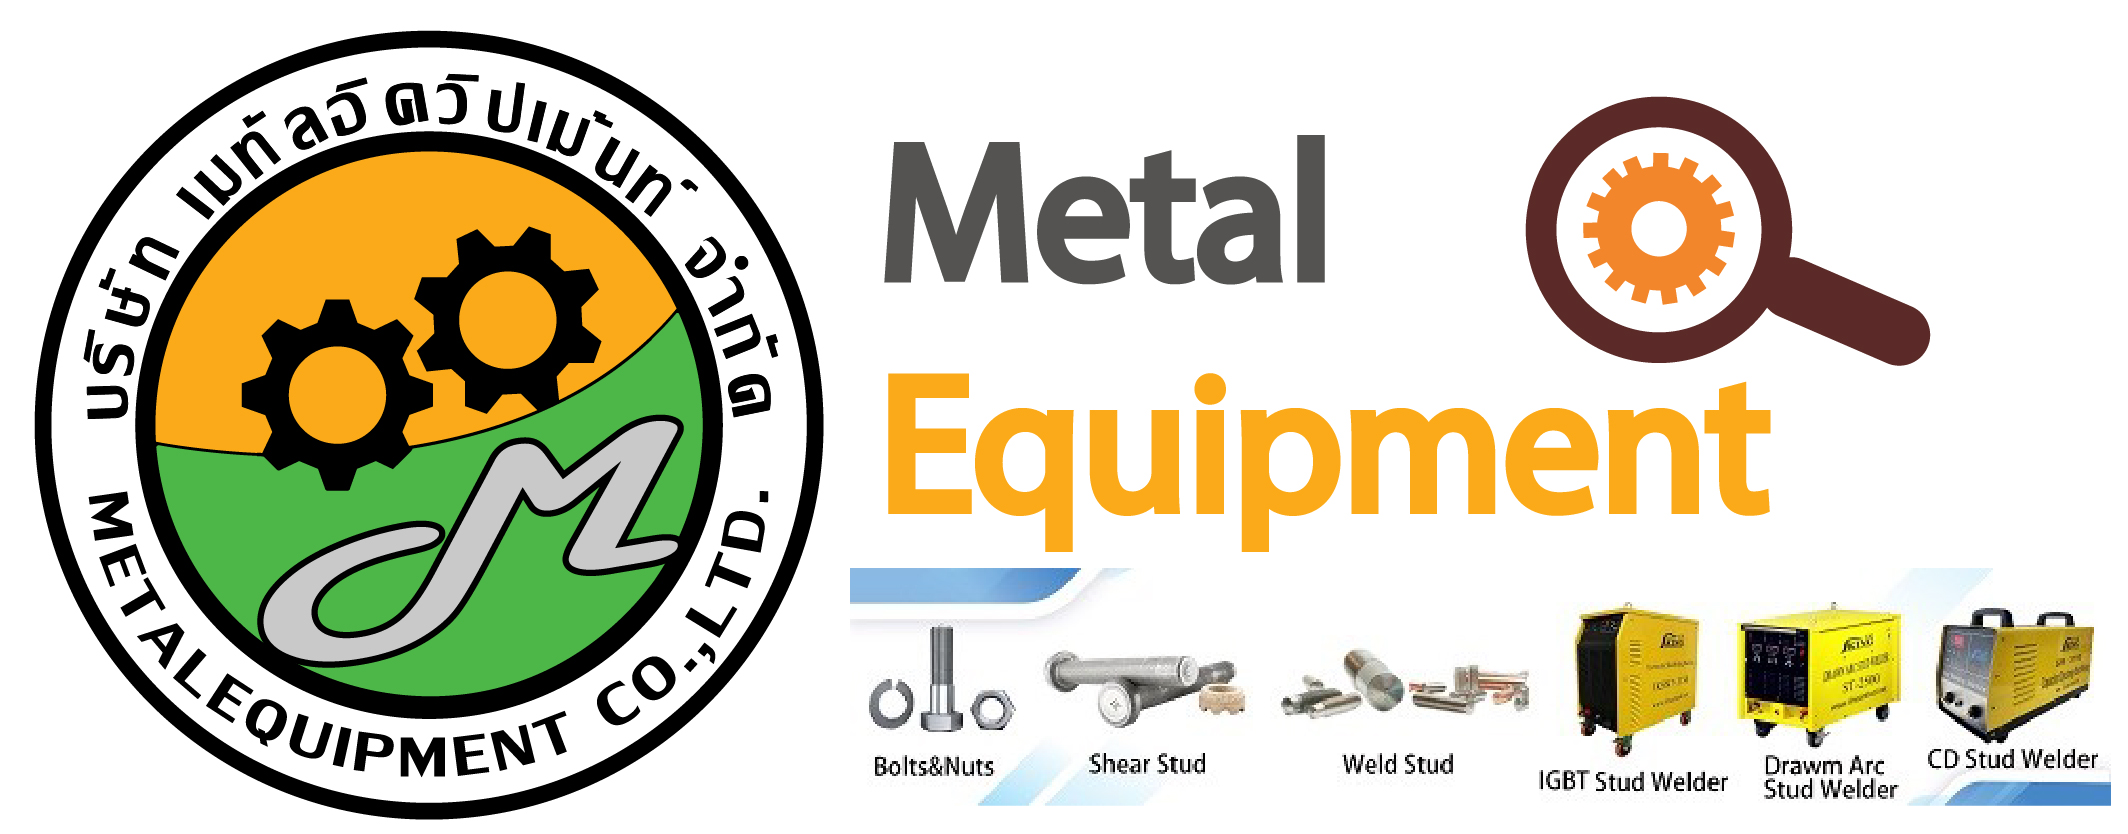 Metalequipment